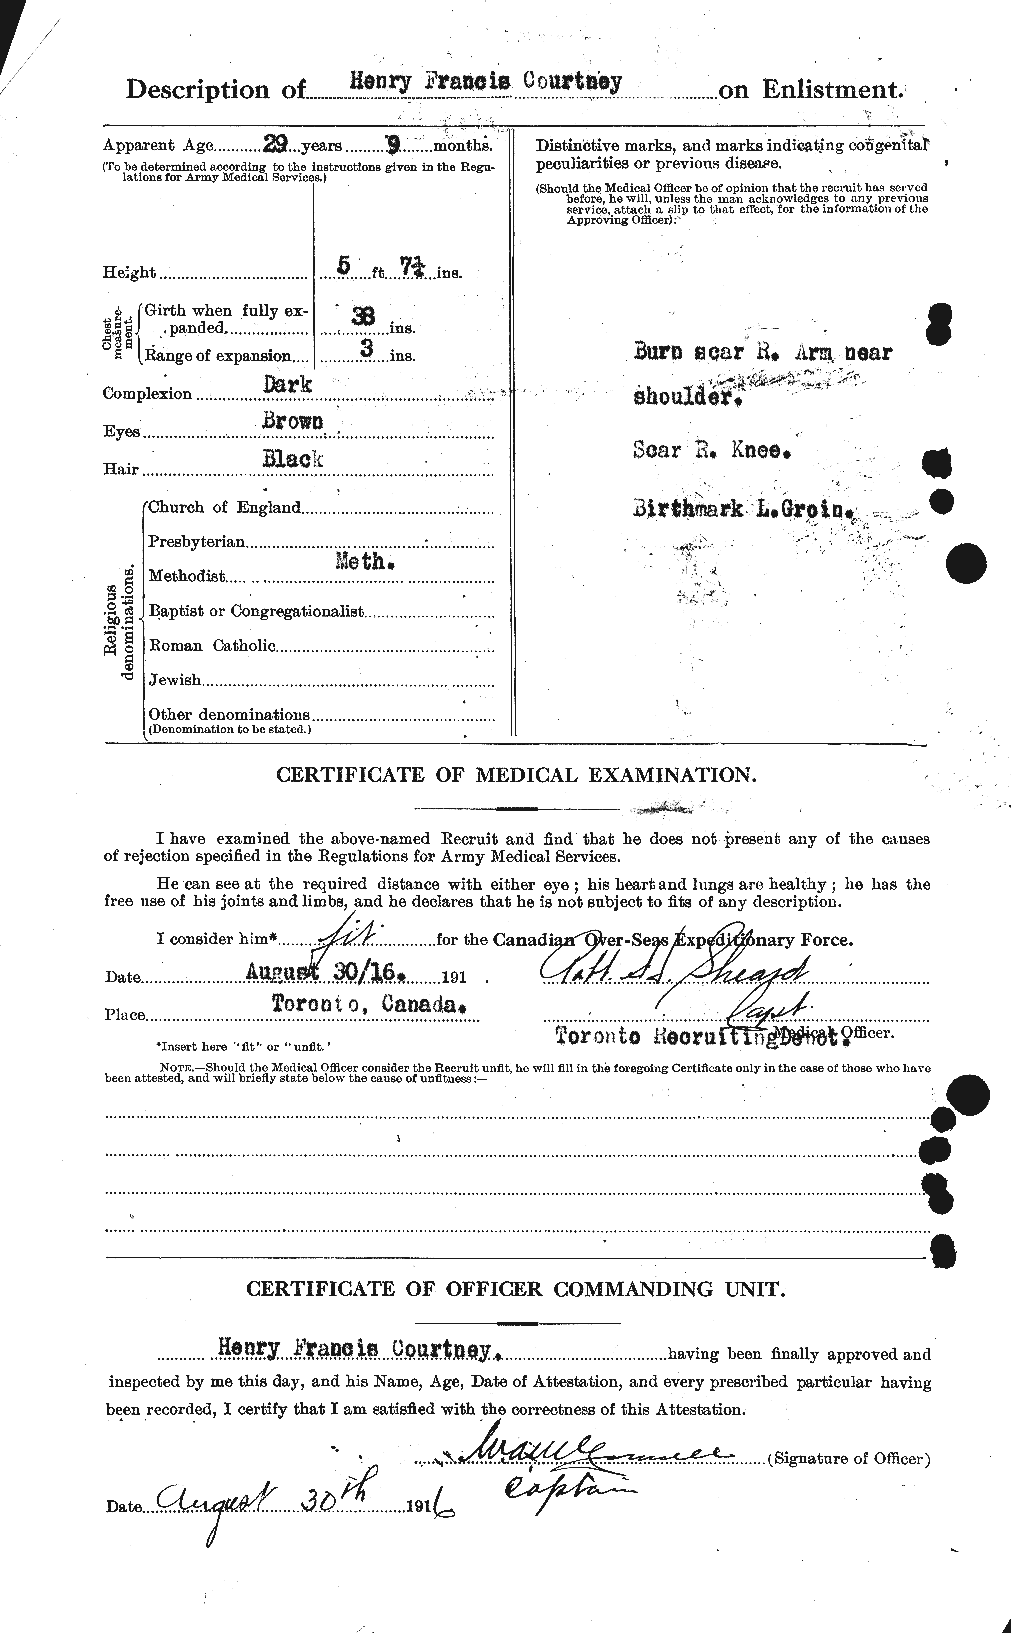 Dossiers du Personnel de la Première Guerre mondiale - CEC 059240b